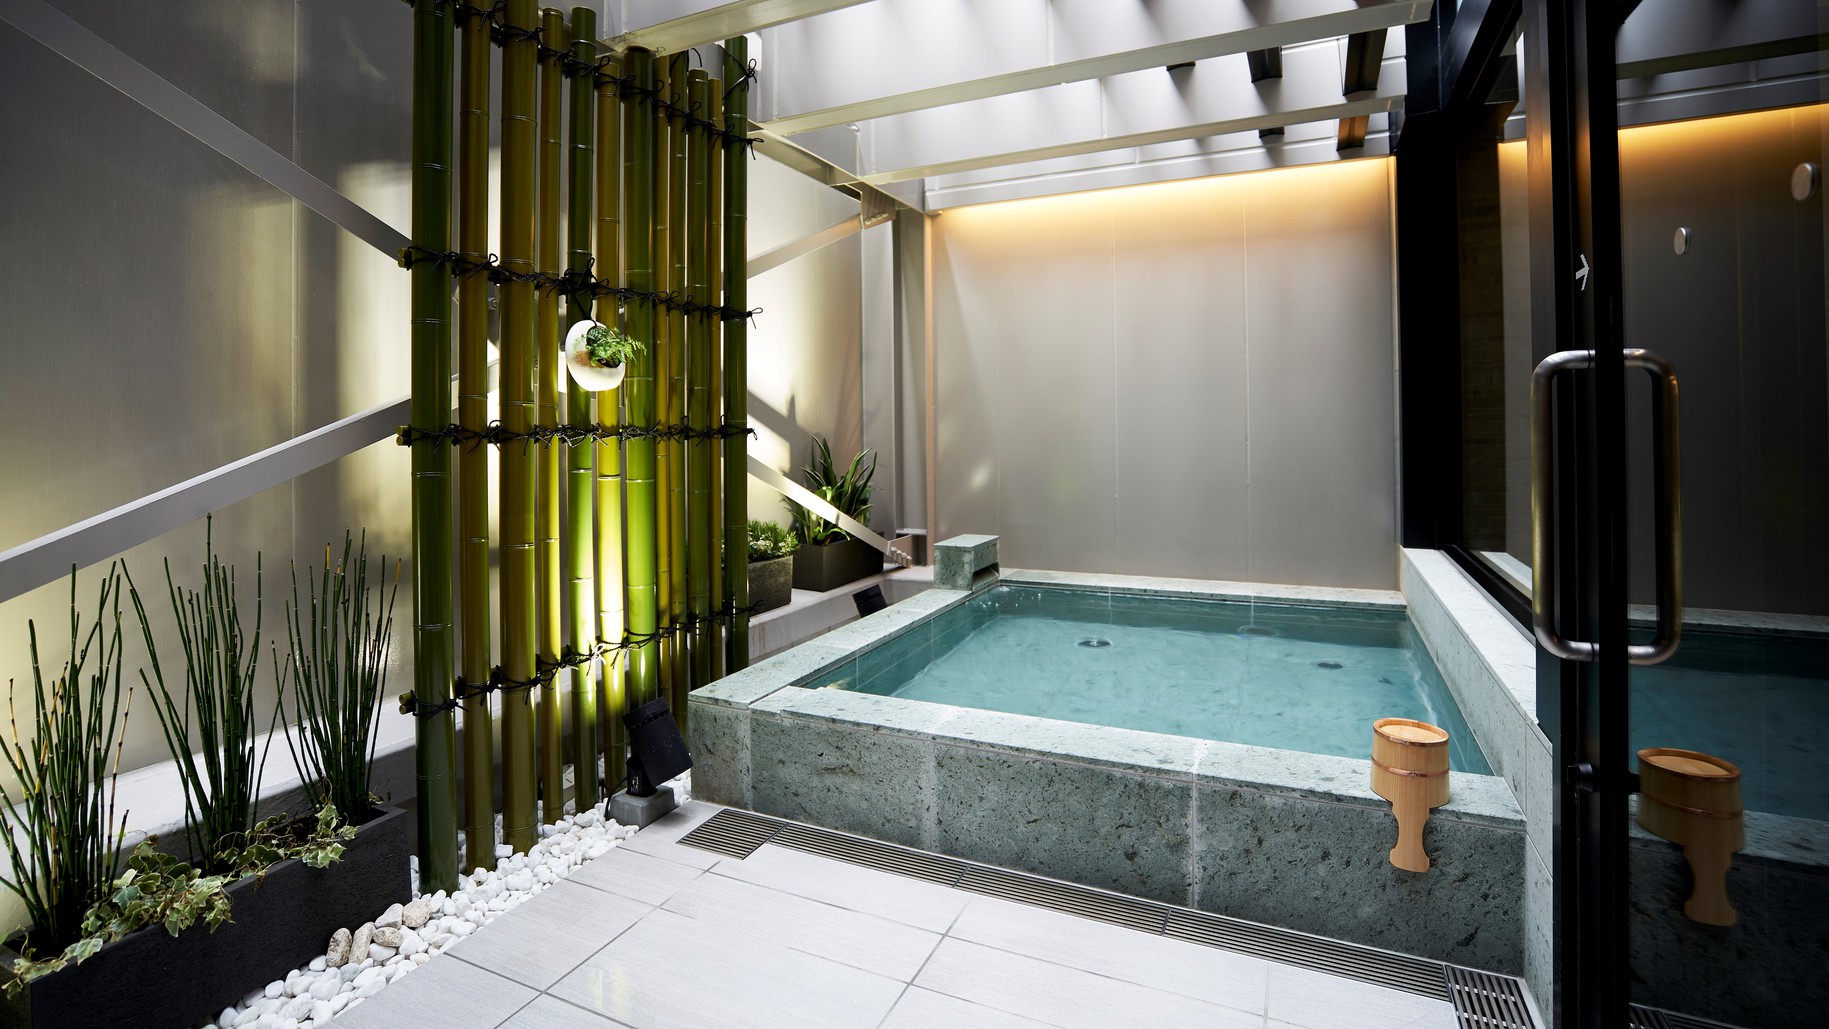 ：露天風呂ホテル2階の大浴場には露天風呂もございます。ビジネス、レジャーの疲れをゆったりと癒します